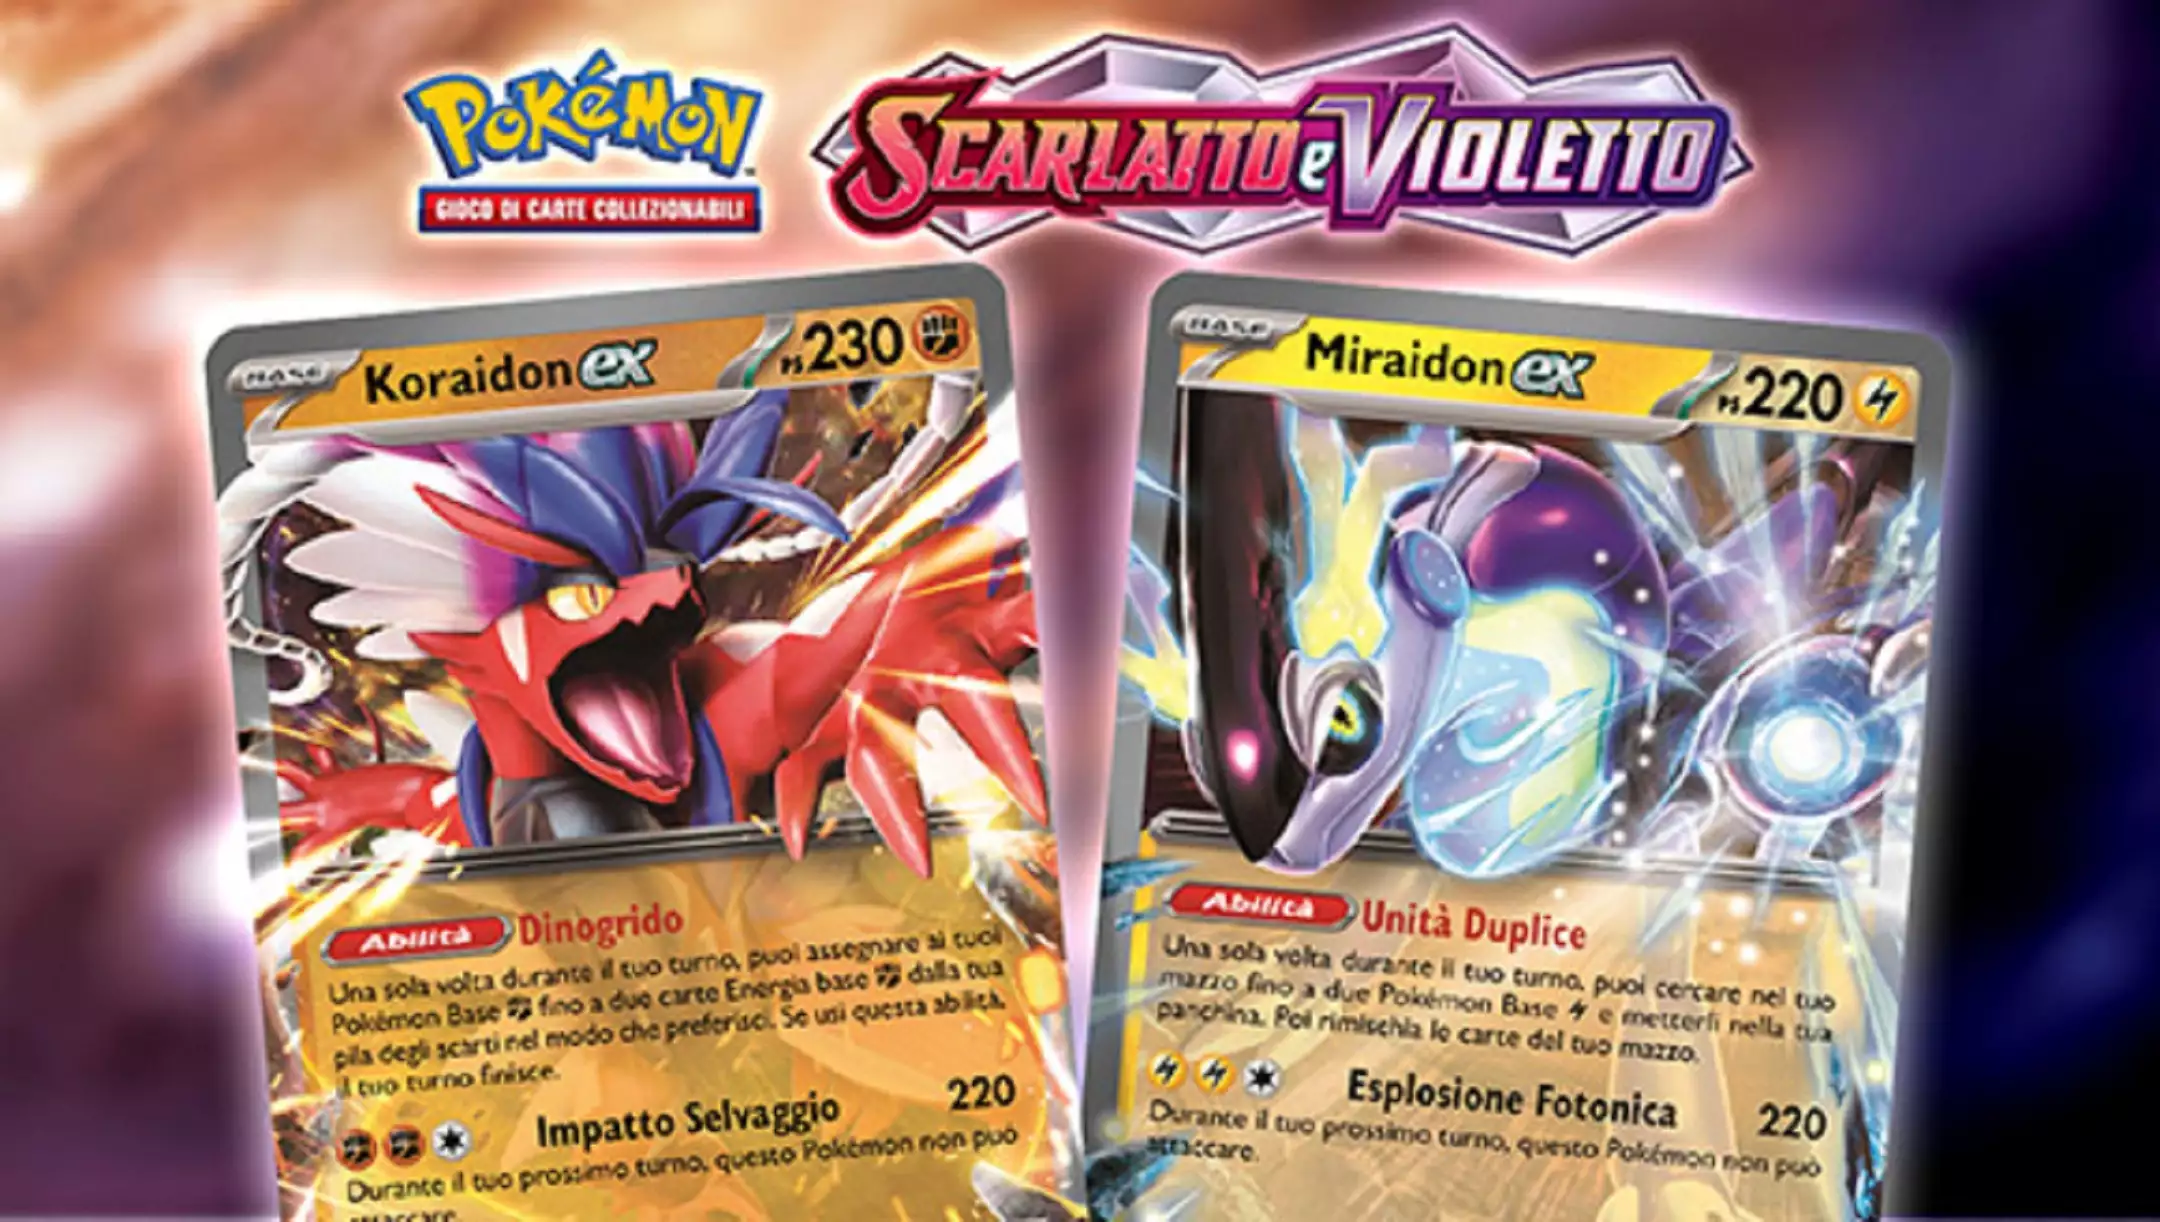 Pokémon Violetto e Scarlatto - Set Allenatore Fuoriclasse Miraidon e Koraidon sono disponibili in pre-ordine